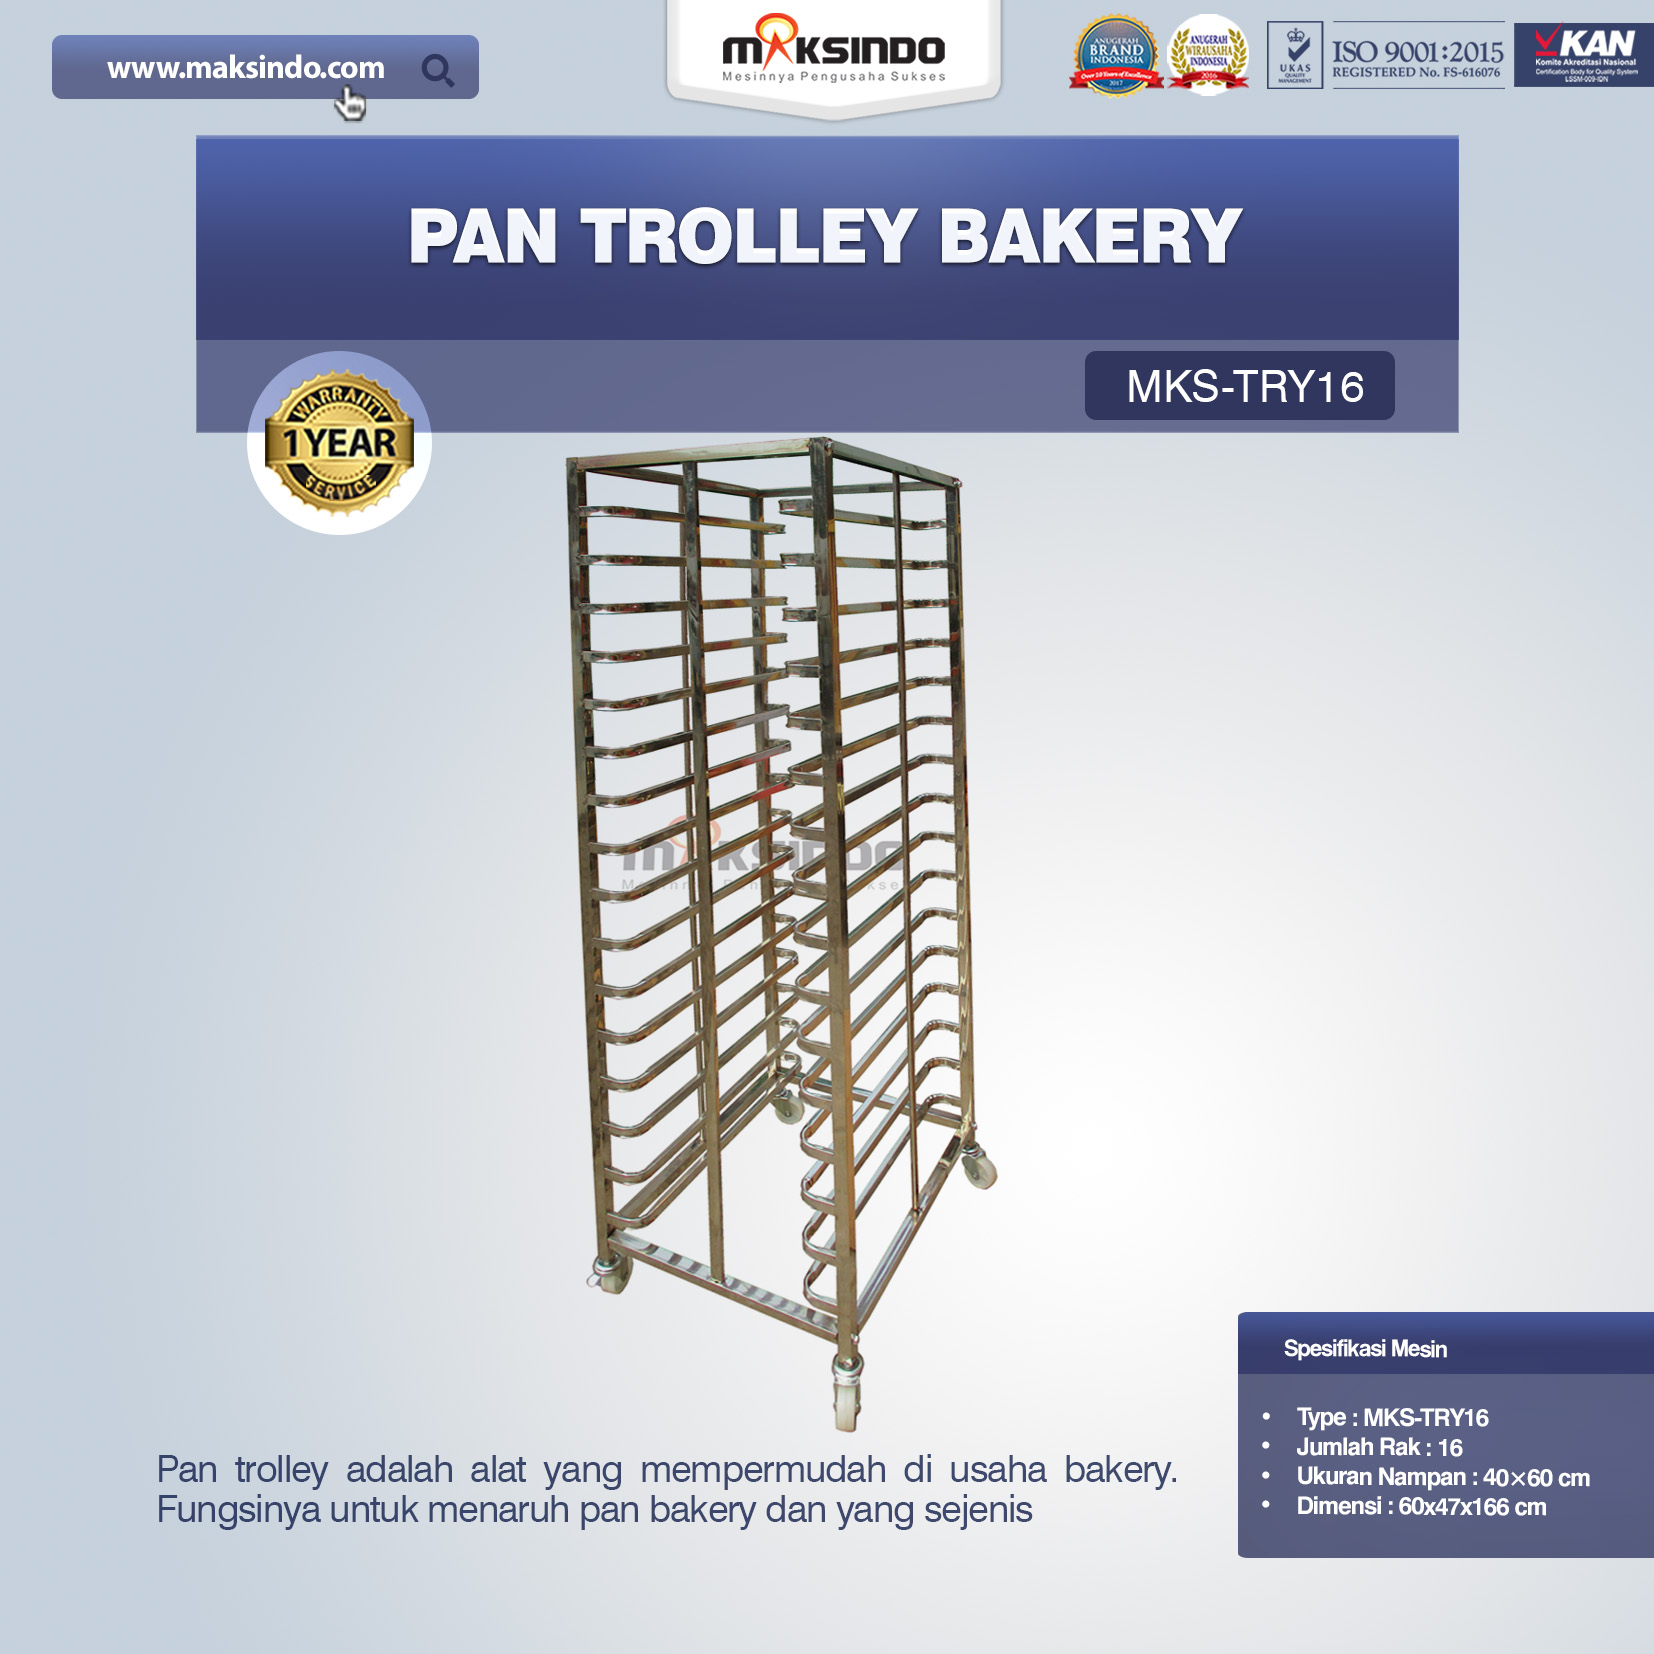 Jual Pan Trolley Bakery (MKS-TRY16) di Blitar